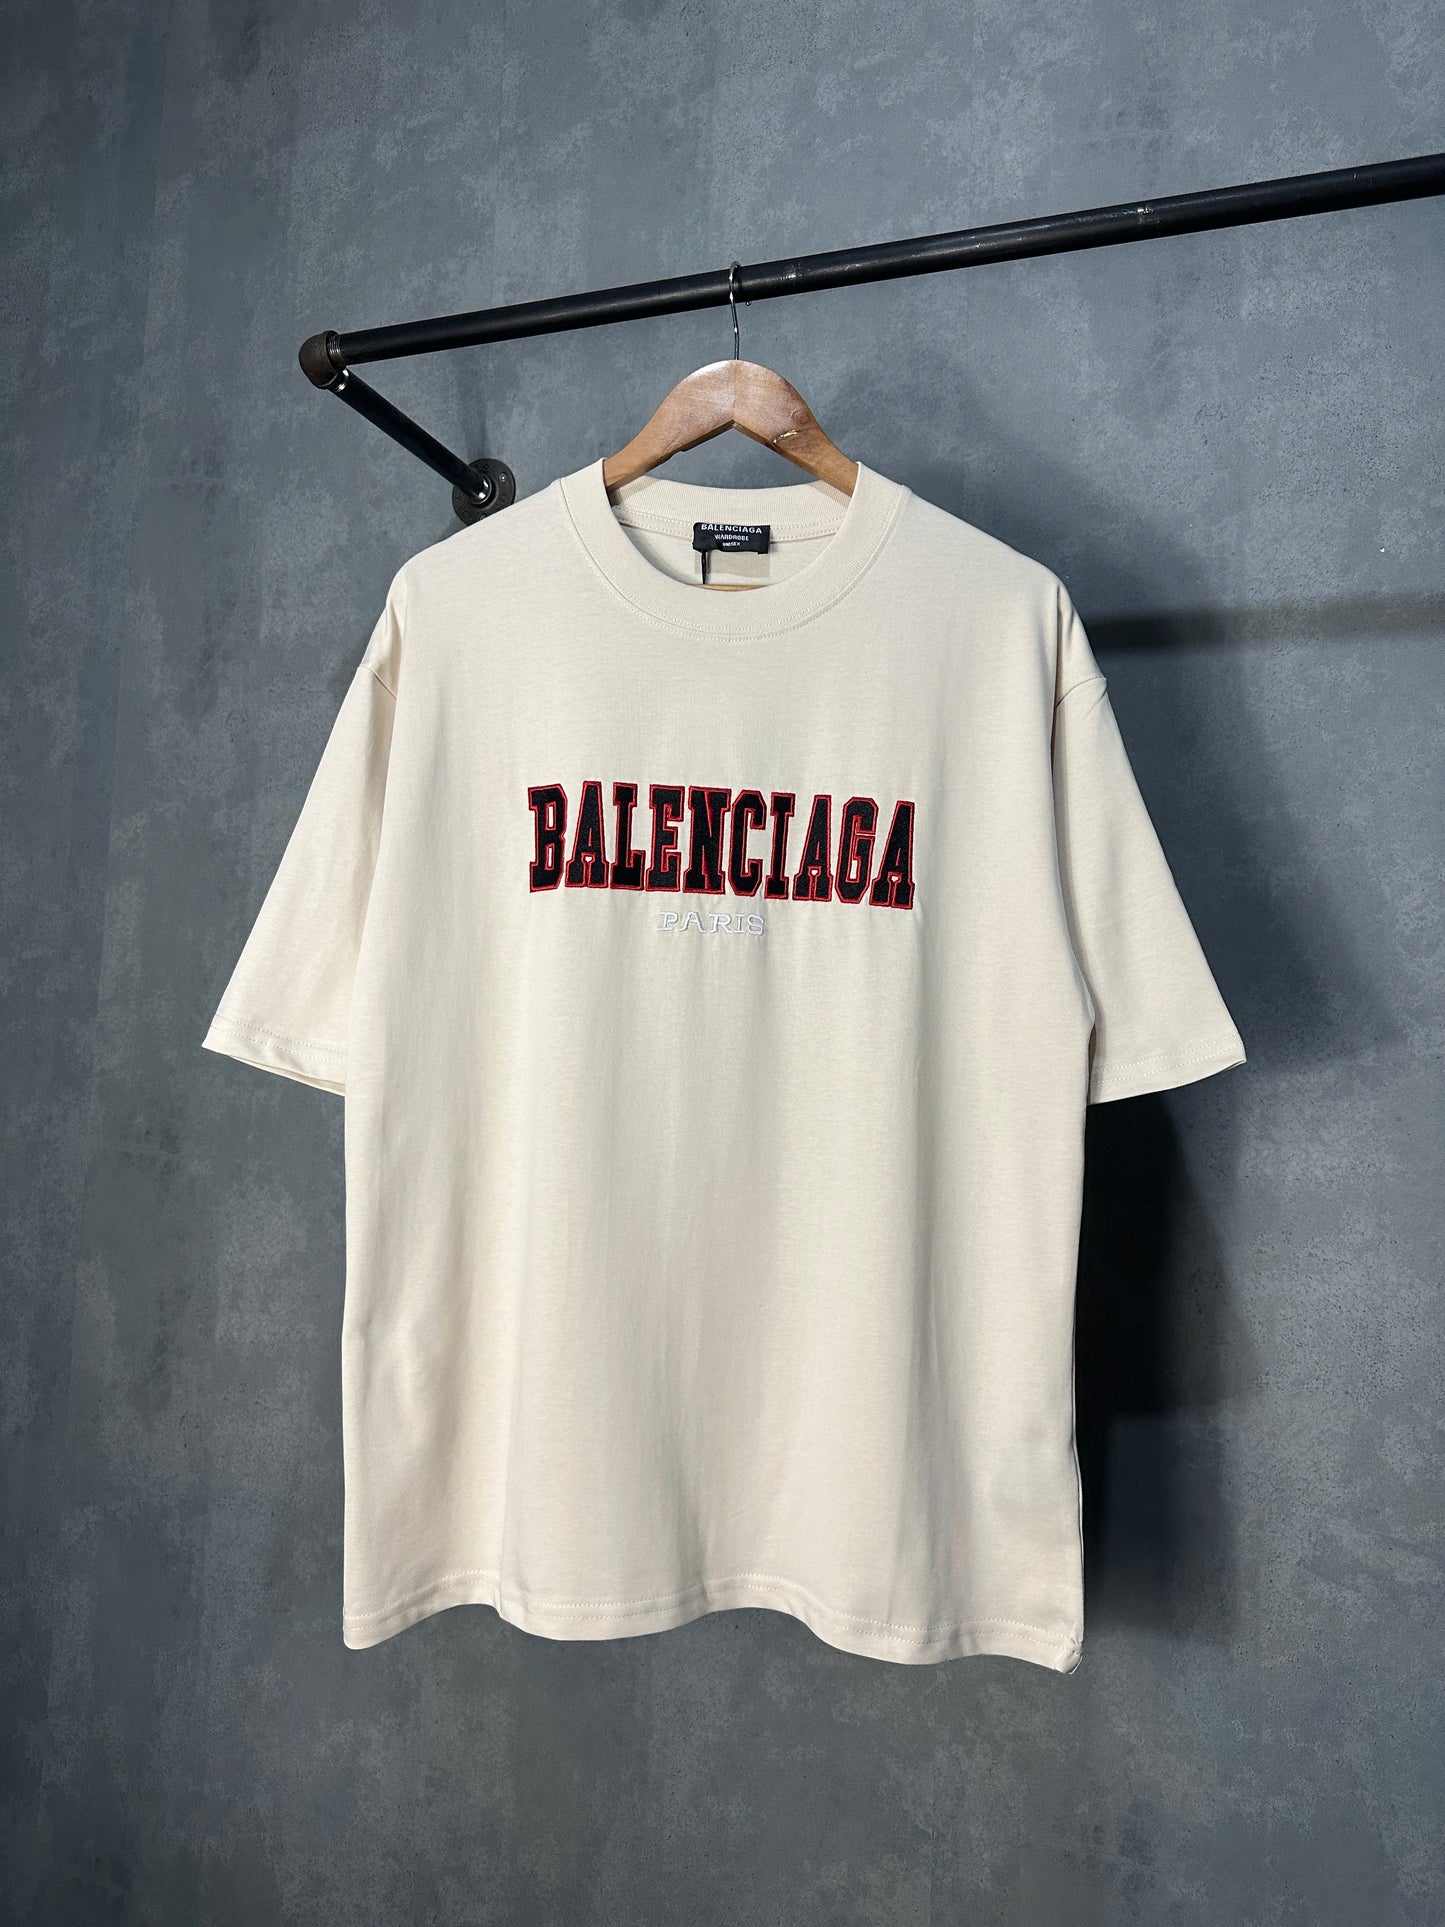 Balenciaga Paris T-Shirt (Cream)